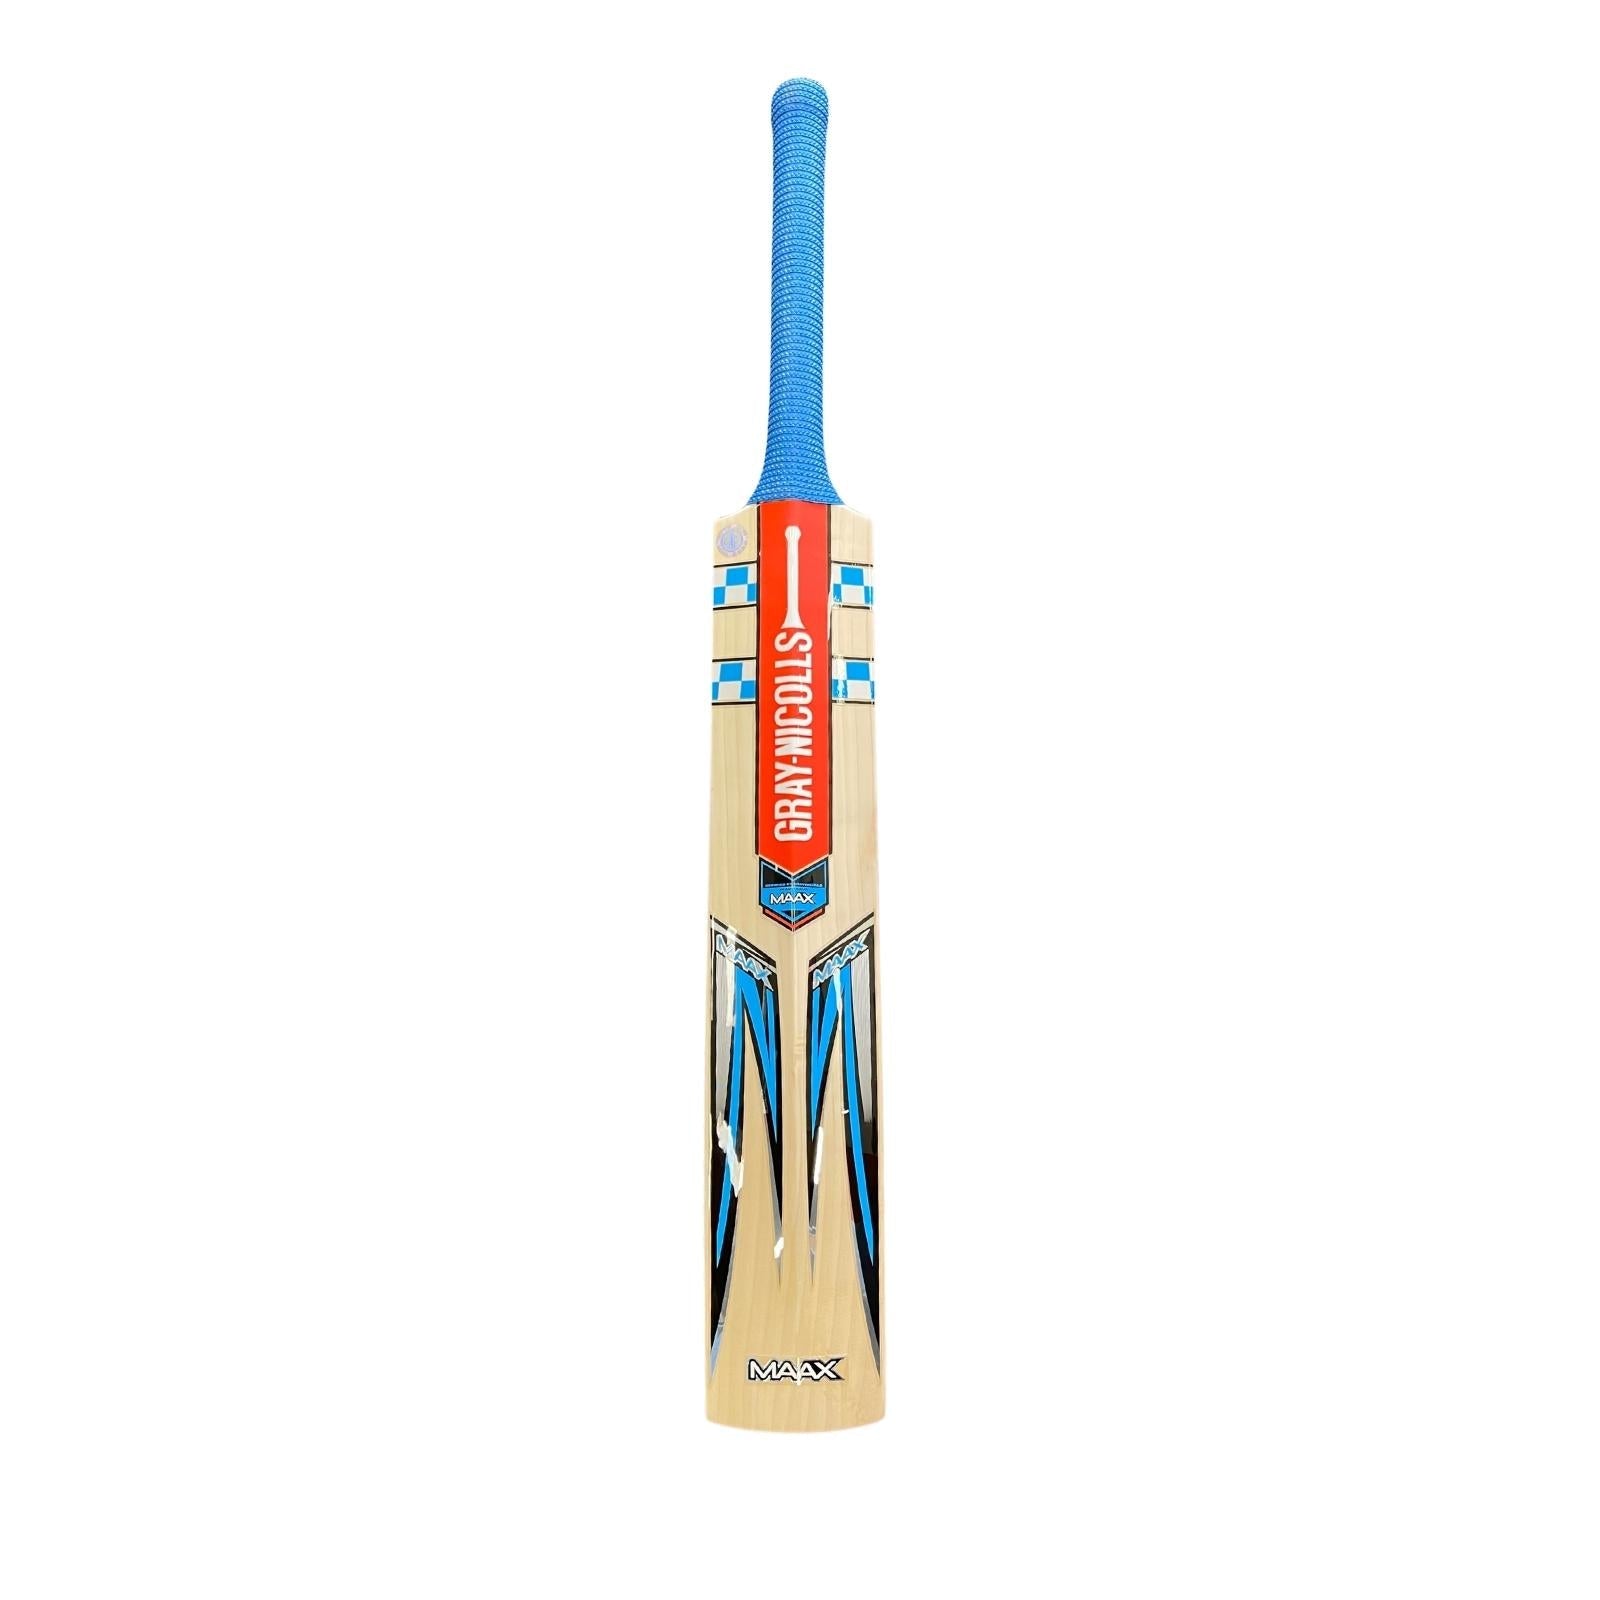 Gray Nicolls Maax GN5 Cricket Bat - Size 5